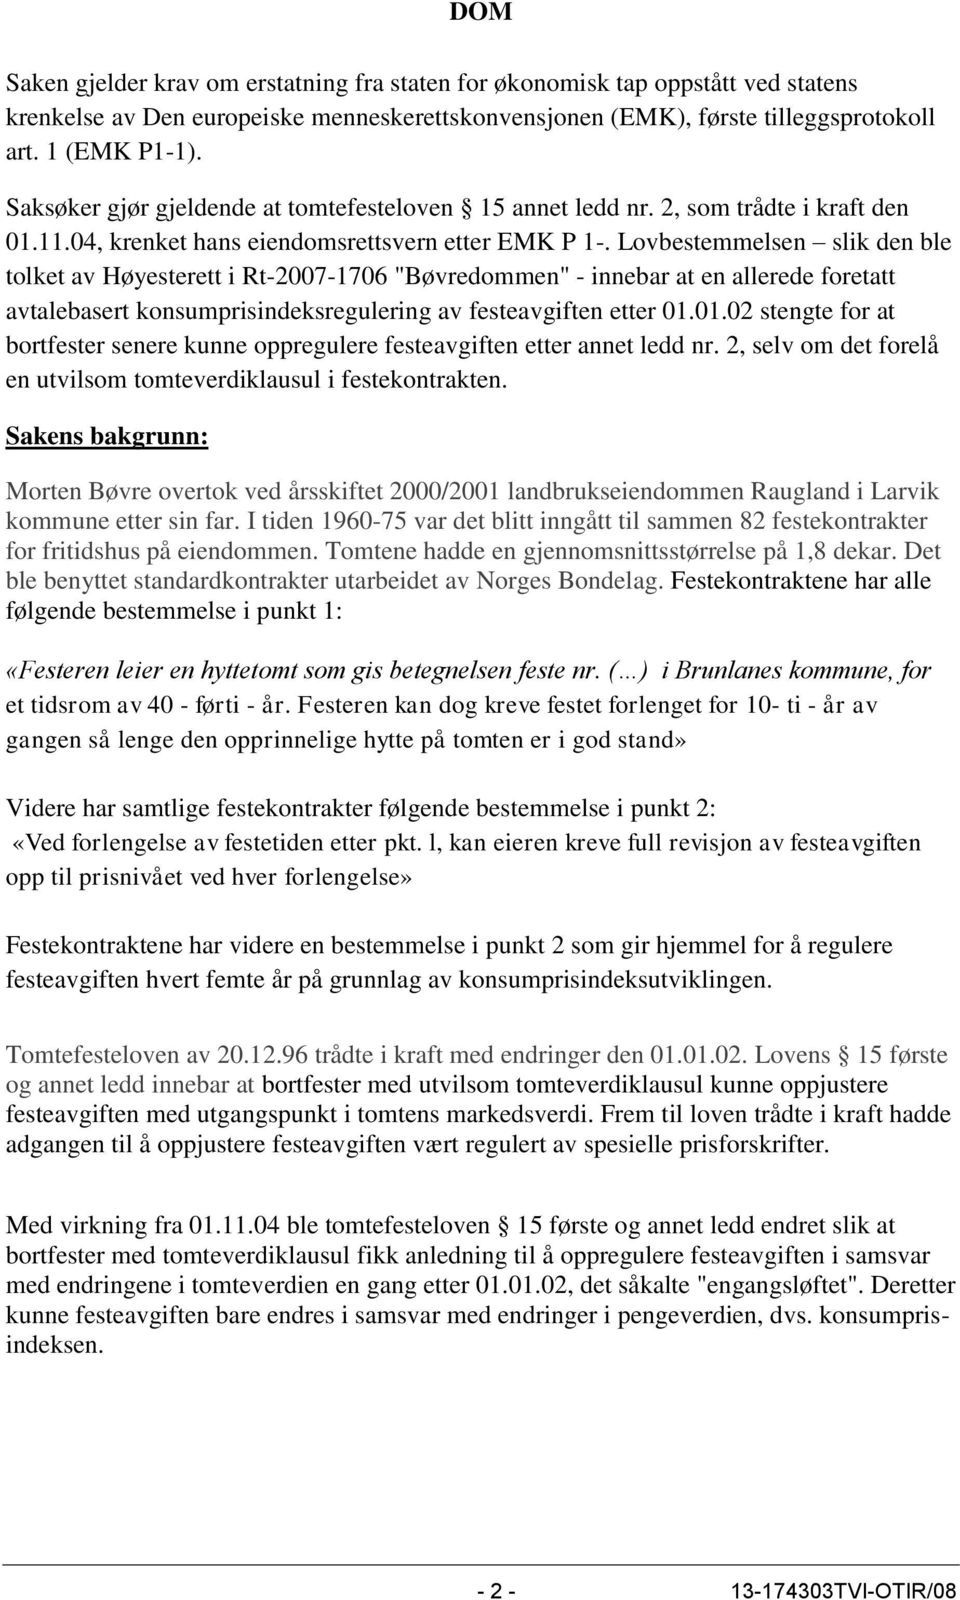 Lovbestemmelsen slik den ble tolket av Høyesterett i Rt-2007-1706 "Bøvredommen" - innebar at en allerede foretatt avtalebasert konsumprisindeksregulering av festeavgiften etter 01.